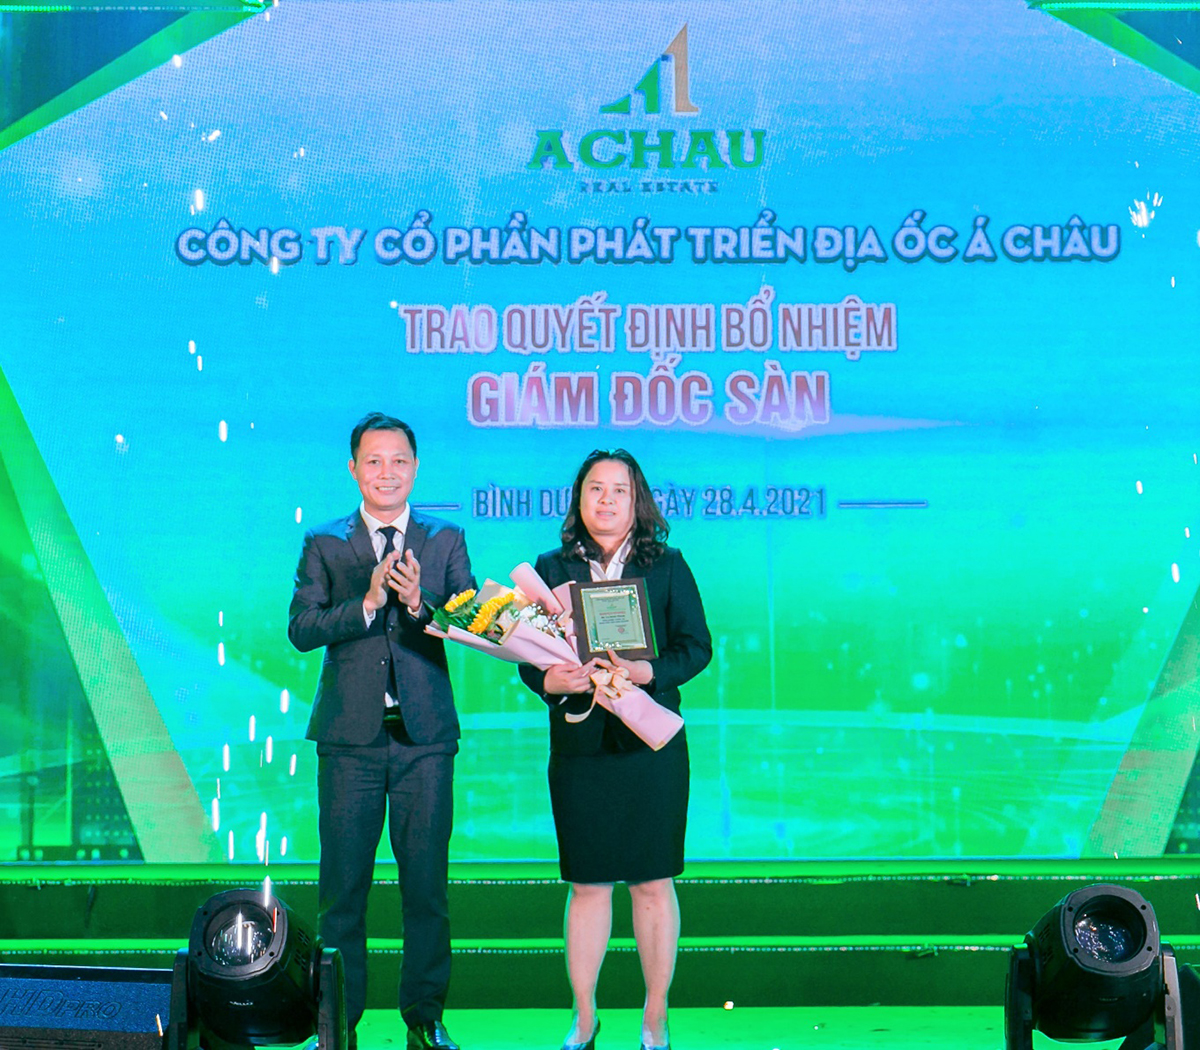 Ông Nguyễn Hữu Tạo trao quyết định bổ nhiệm giám đốc sàn tại lễ ra mắt hệ thống nhận diện thương hiệu mới của Địa ốc Á Châu